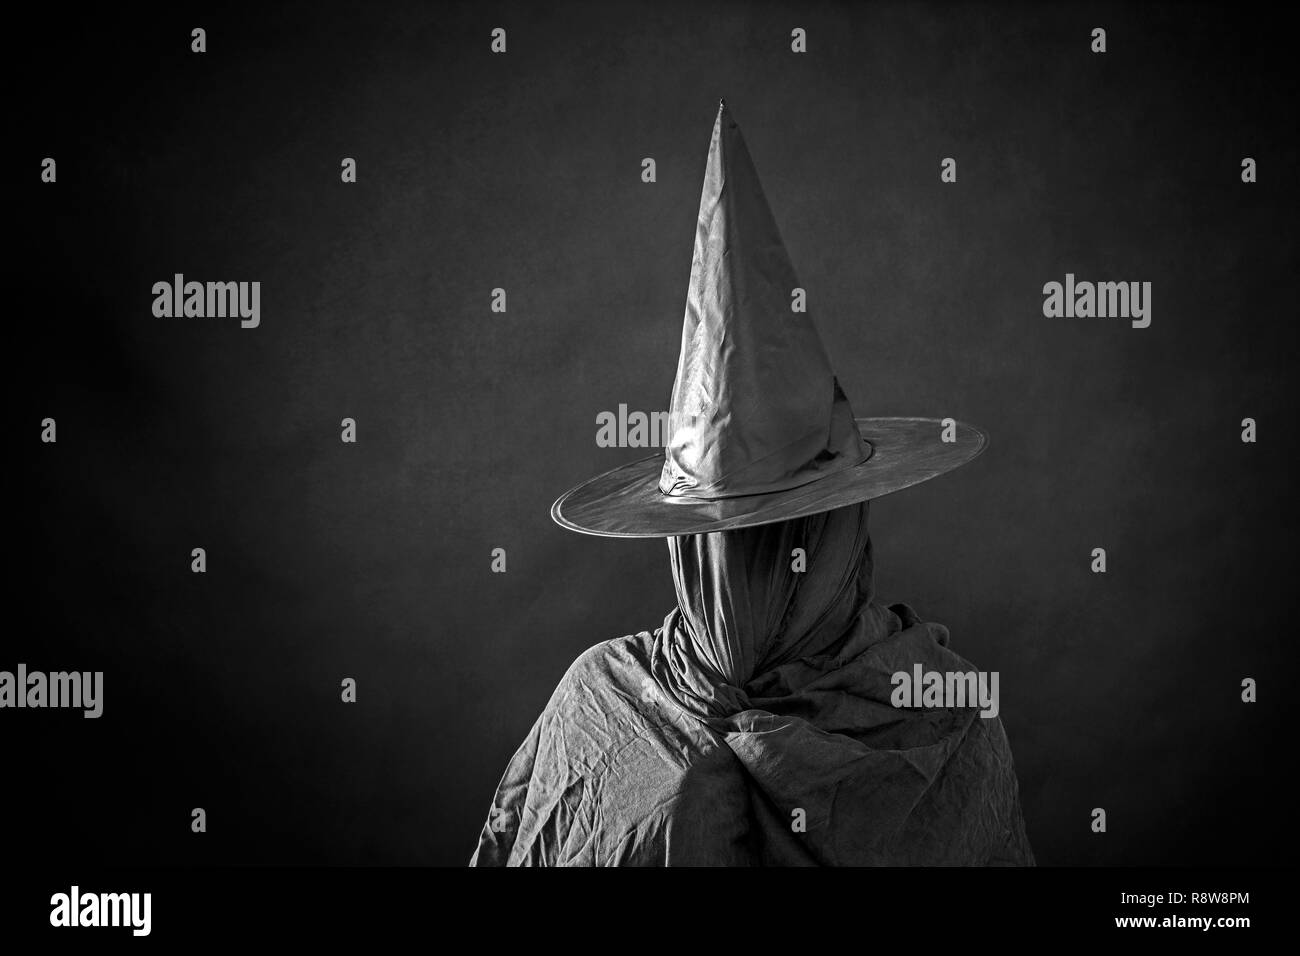 La figure fantomatique avec hat dans le noir Banque D'Images